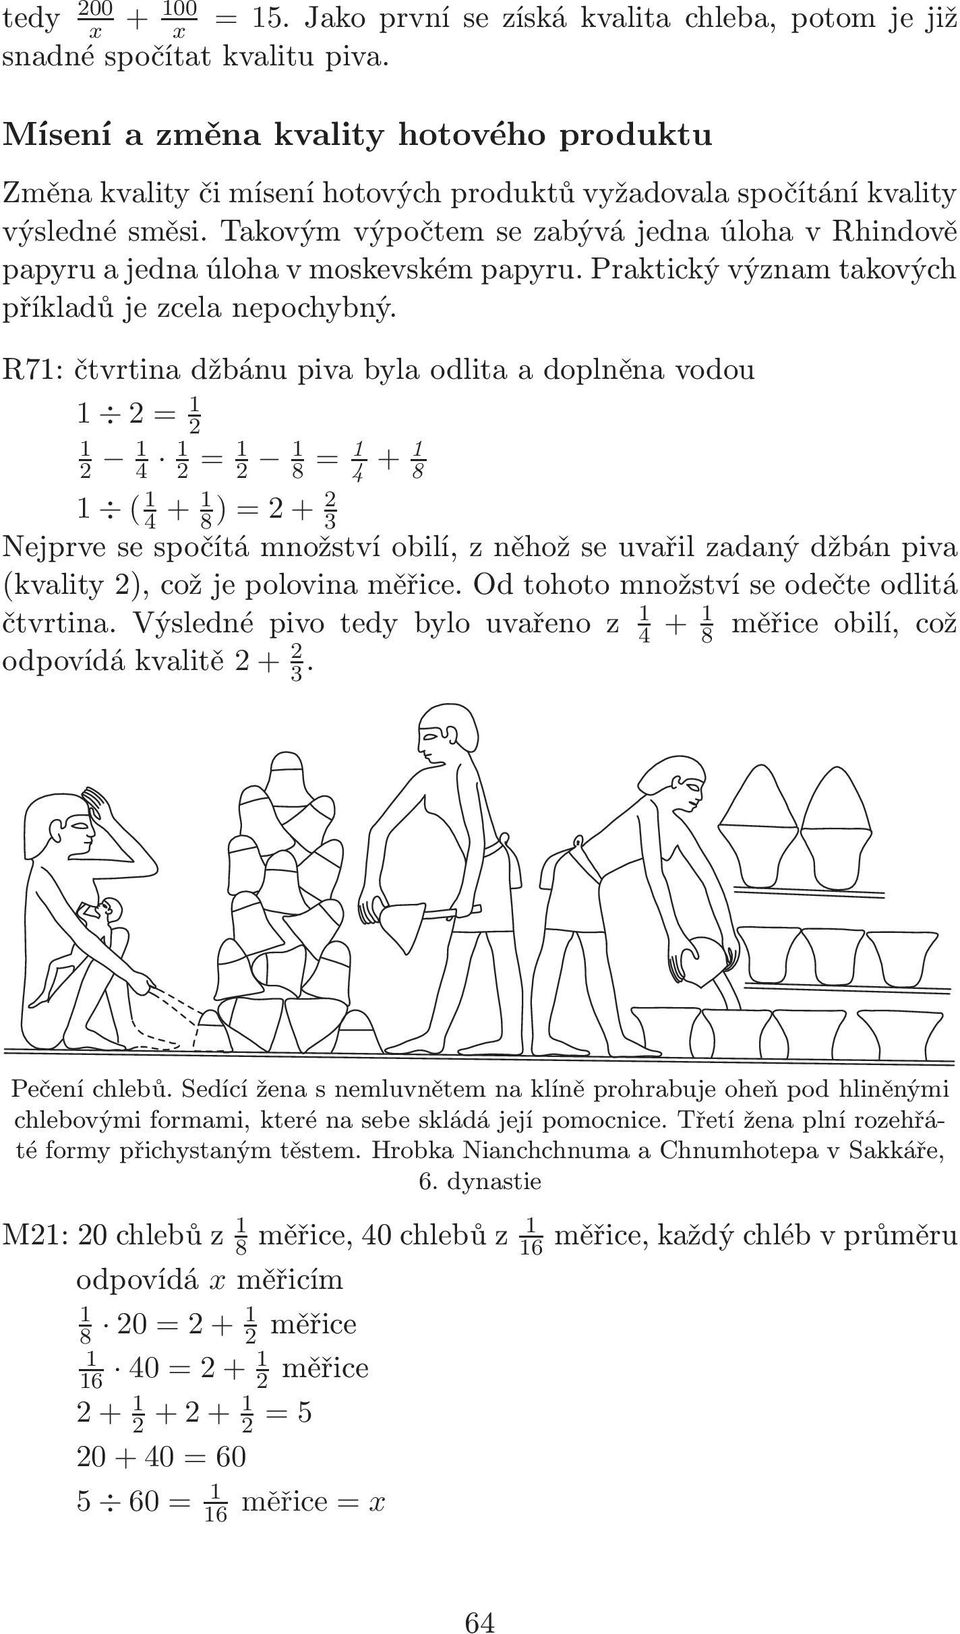 Takovým výpočtem se zabývá jedna úloha v Rhindově papyru a jedna úloha v moskevském papyru. Praktický význam takových příkladů je zcela nepochybný.